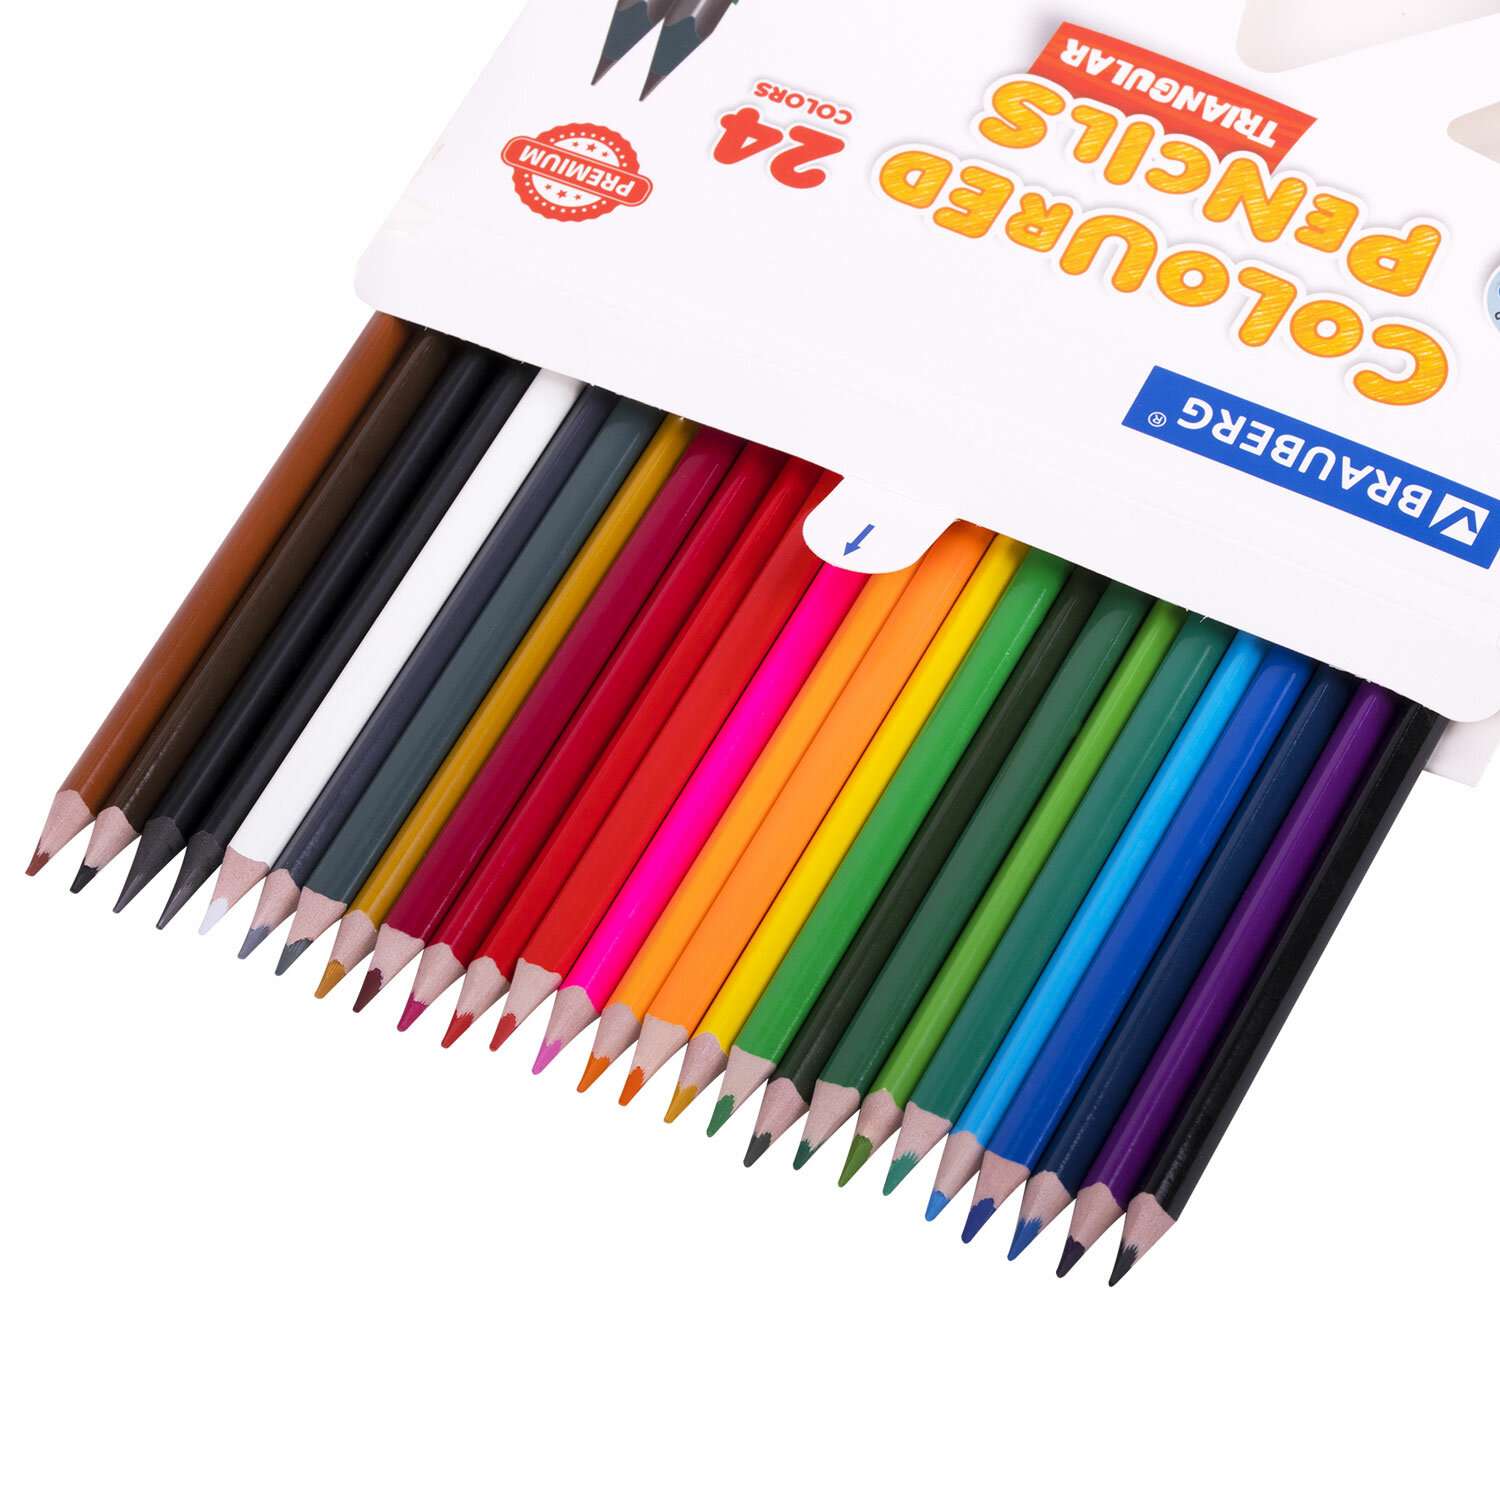 Карандаши цветные Brauberg мягкие художественные для рисования 24 цвета + 2 чернографитных карандаша - фото 2